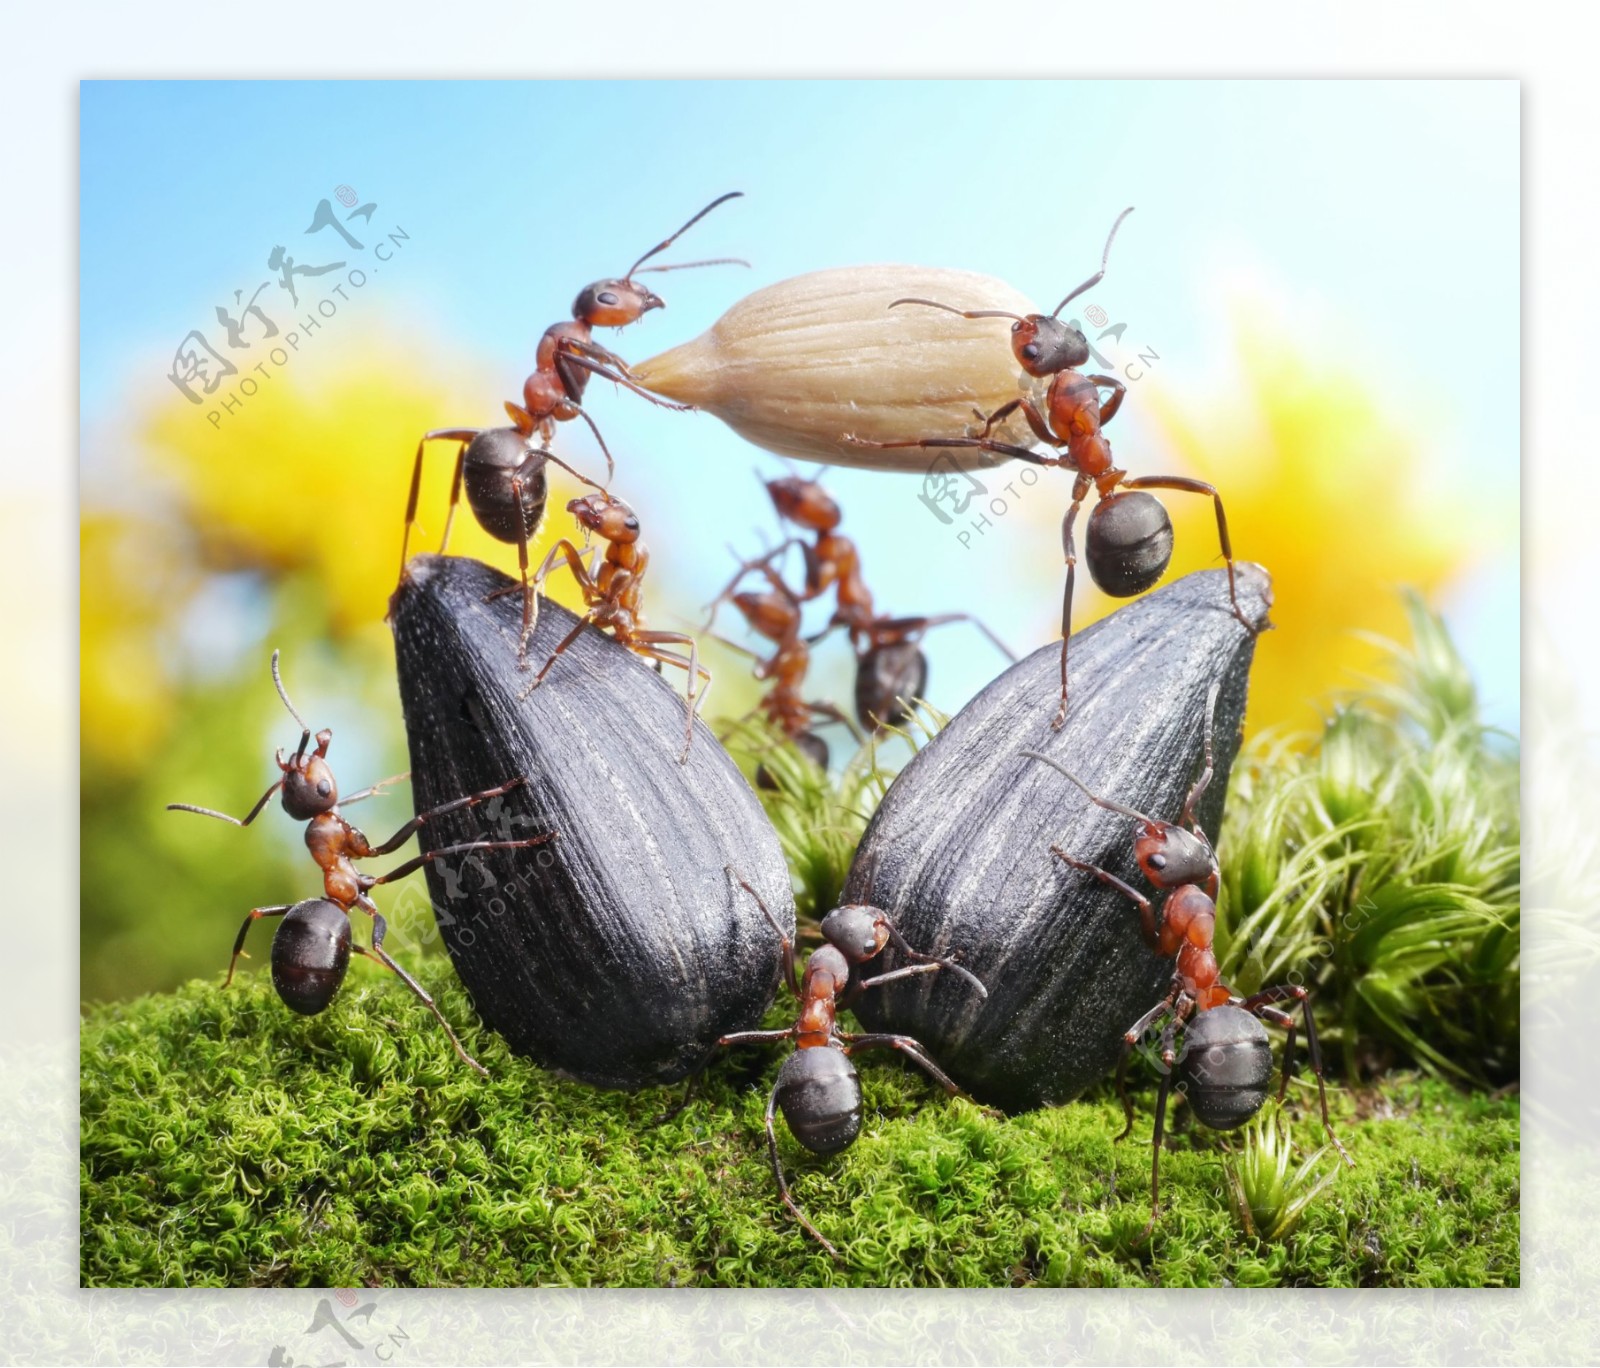 蚂蚁搬运食物图片,蚂蚁搬运食物的图片,蚂蚁搬食物图片_大山谷图库